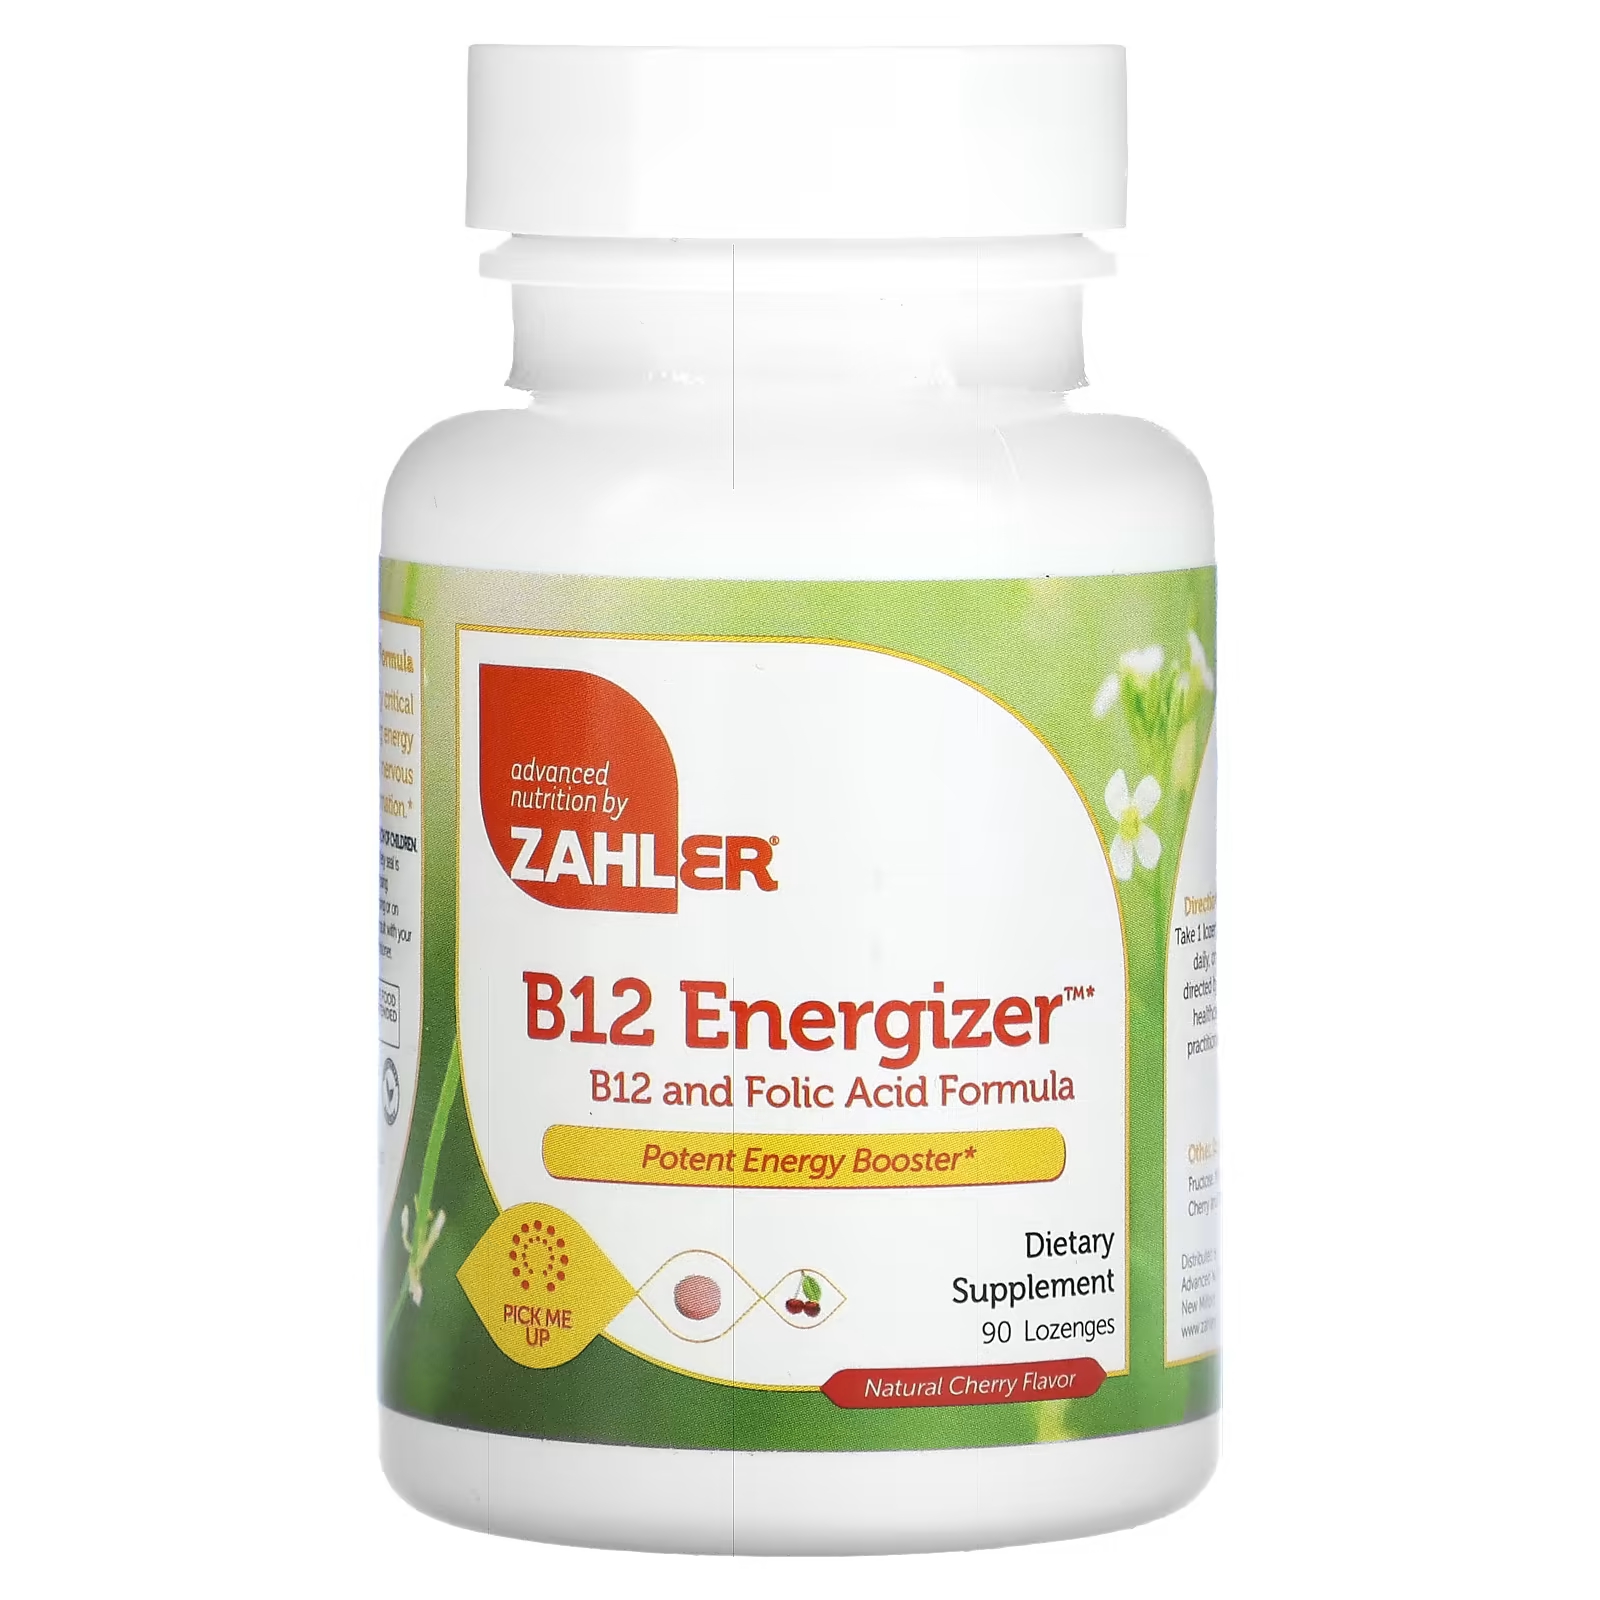 Витамин B12 и фолиевая кислота Zahler B12 Energizer с натуральным вишневым вкусом, 90 пастилок витамин b12 и фолиевая кислота zahler b12 energizer с натуральным вишневым вкусом 90 пастилок